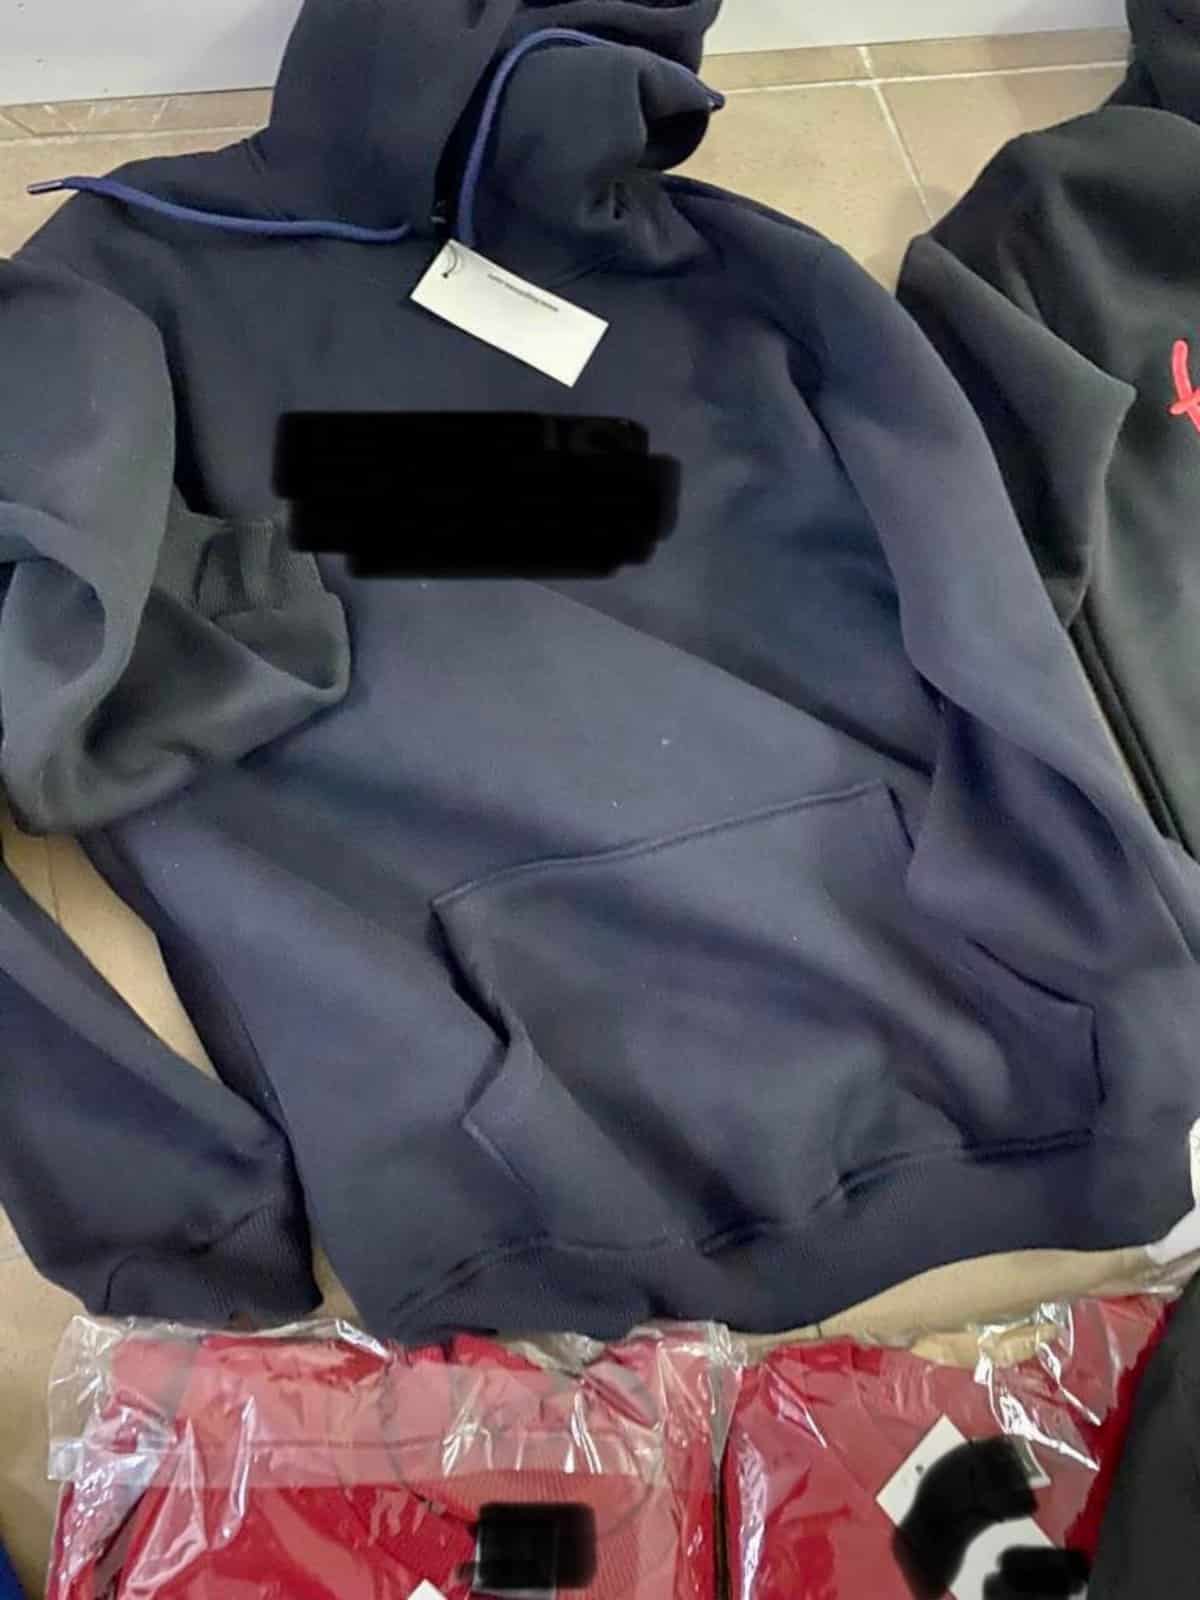 haine „fake” vândute în târgul obor din sibiu - marfă de 10.000 lei, confiscată de polițiști